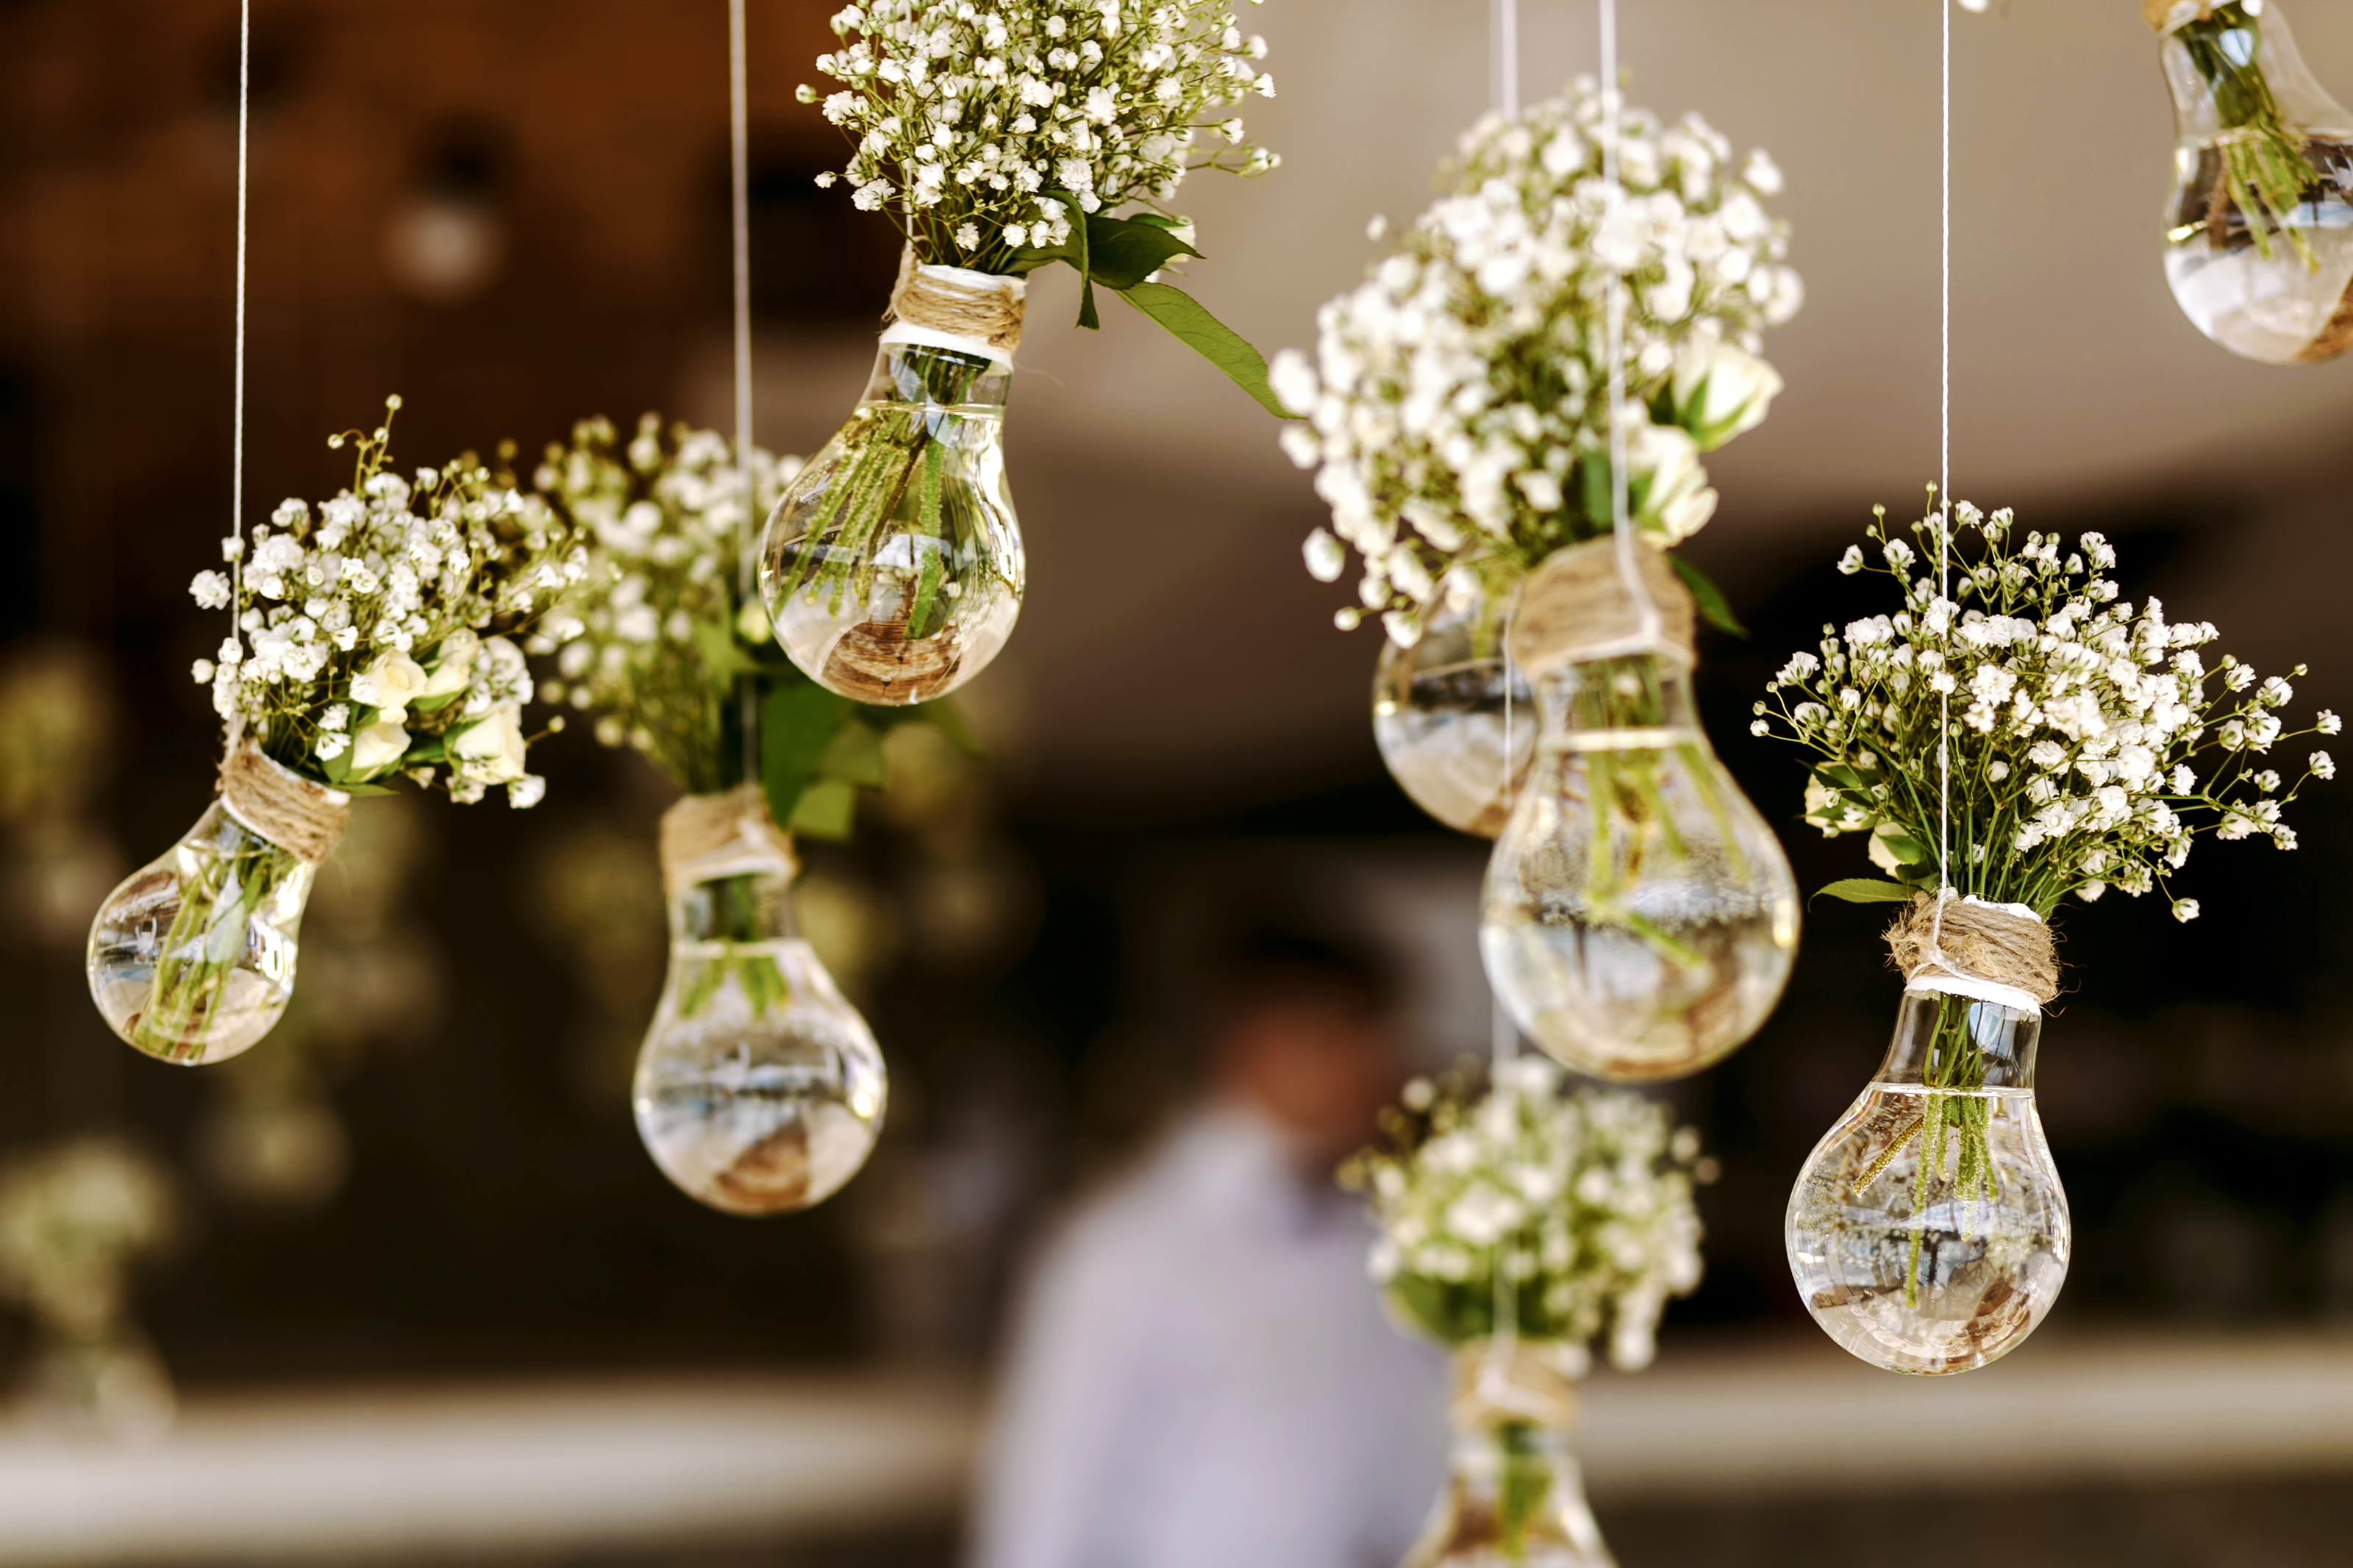 Vases suspendus - dans la cuisine, au salon ou dans le jardin, les vases suspendus subliment votre décoration intérieure et mettent parfaitement en valeur les fleurs colorées.